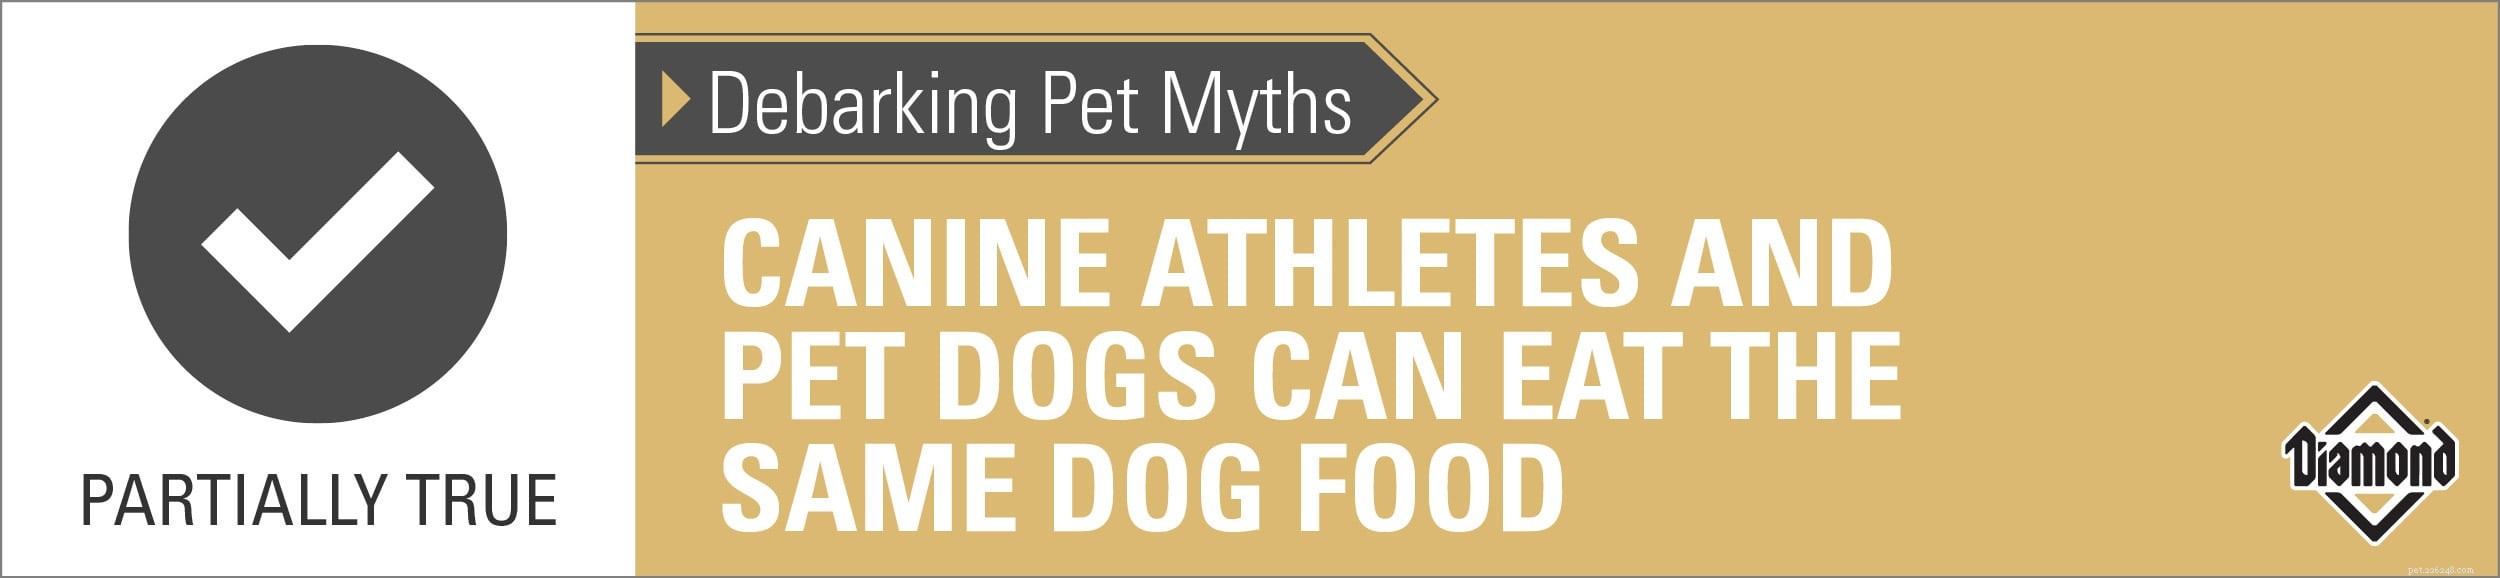 Mitos sobre o descascamento de cães:atletas caninos e cães de estimação podem comer a mesma ração